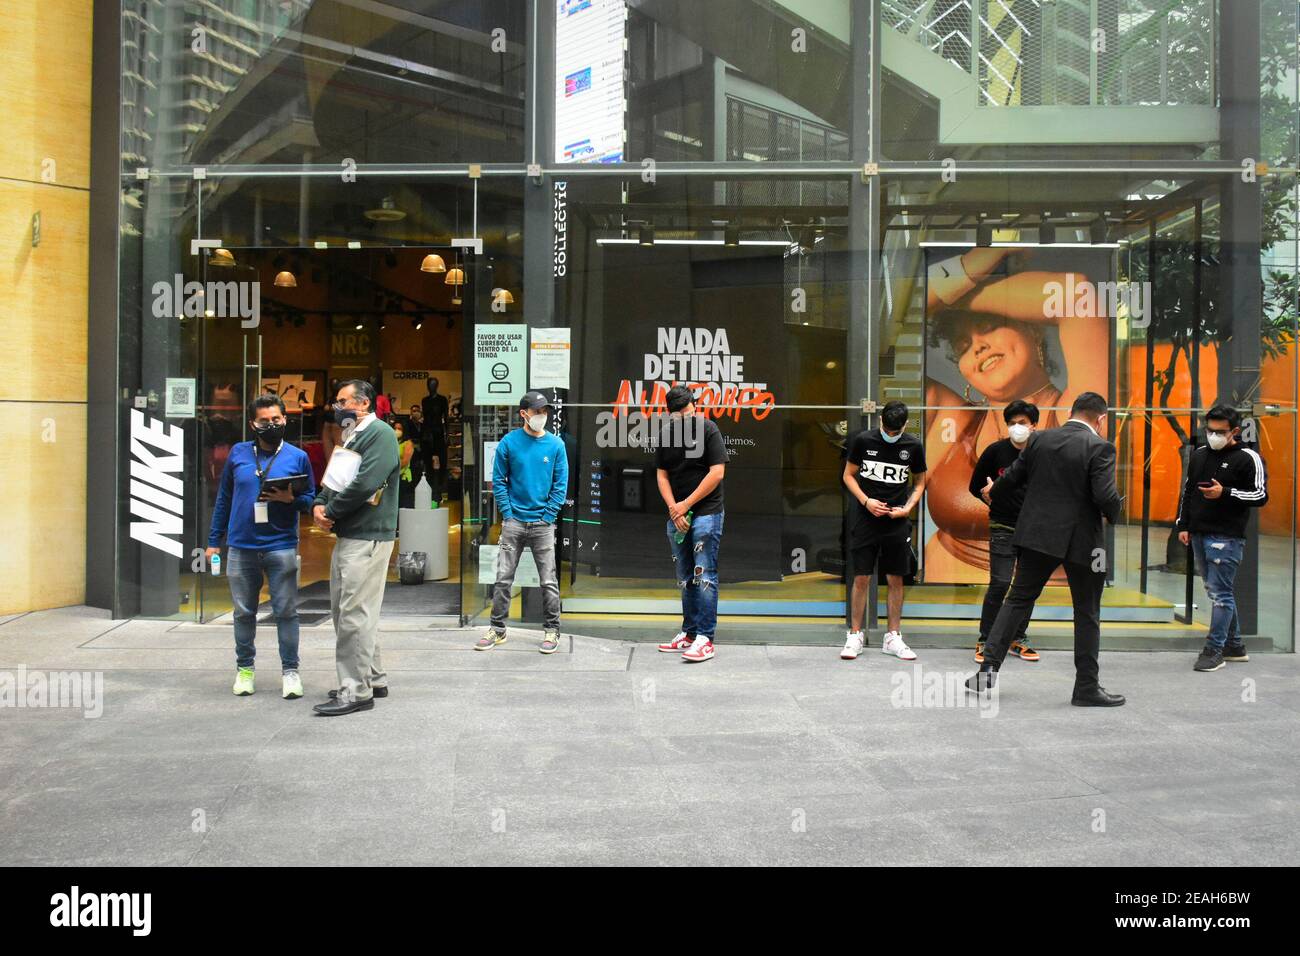 Las personas que usan máscaras faciales se para entrar en una tienda Nike en Antara Fashion Hall.como parte del programa "Activar riesgo", Malls y grandes almacenes se abrieron este